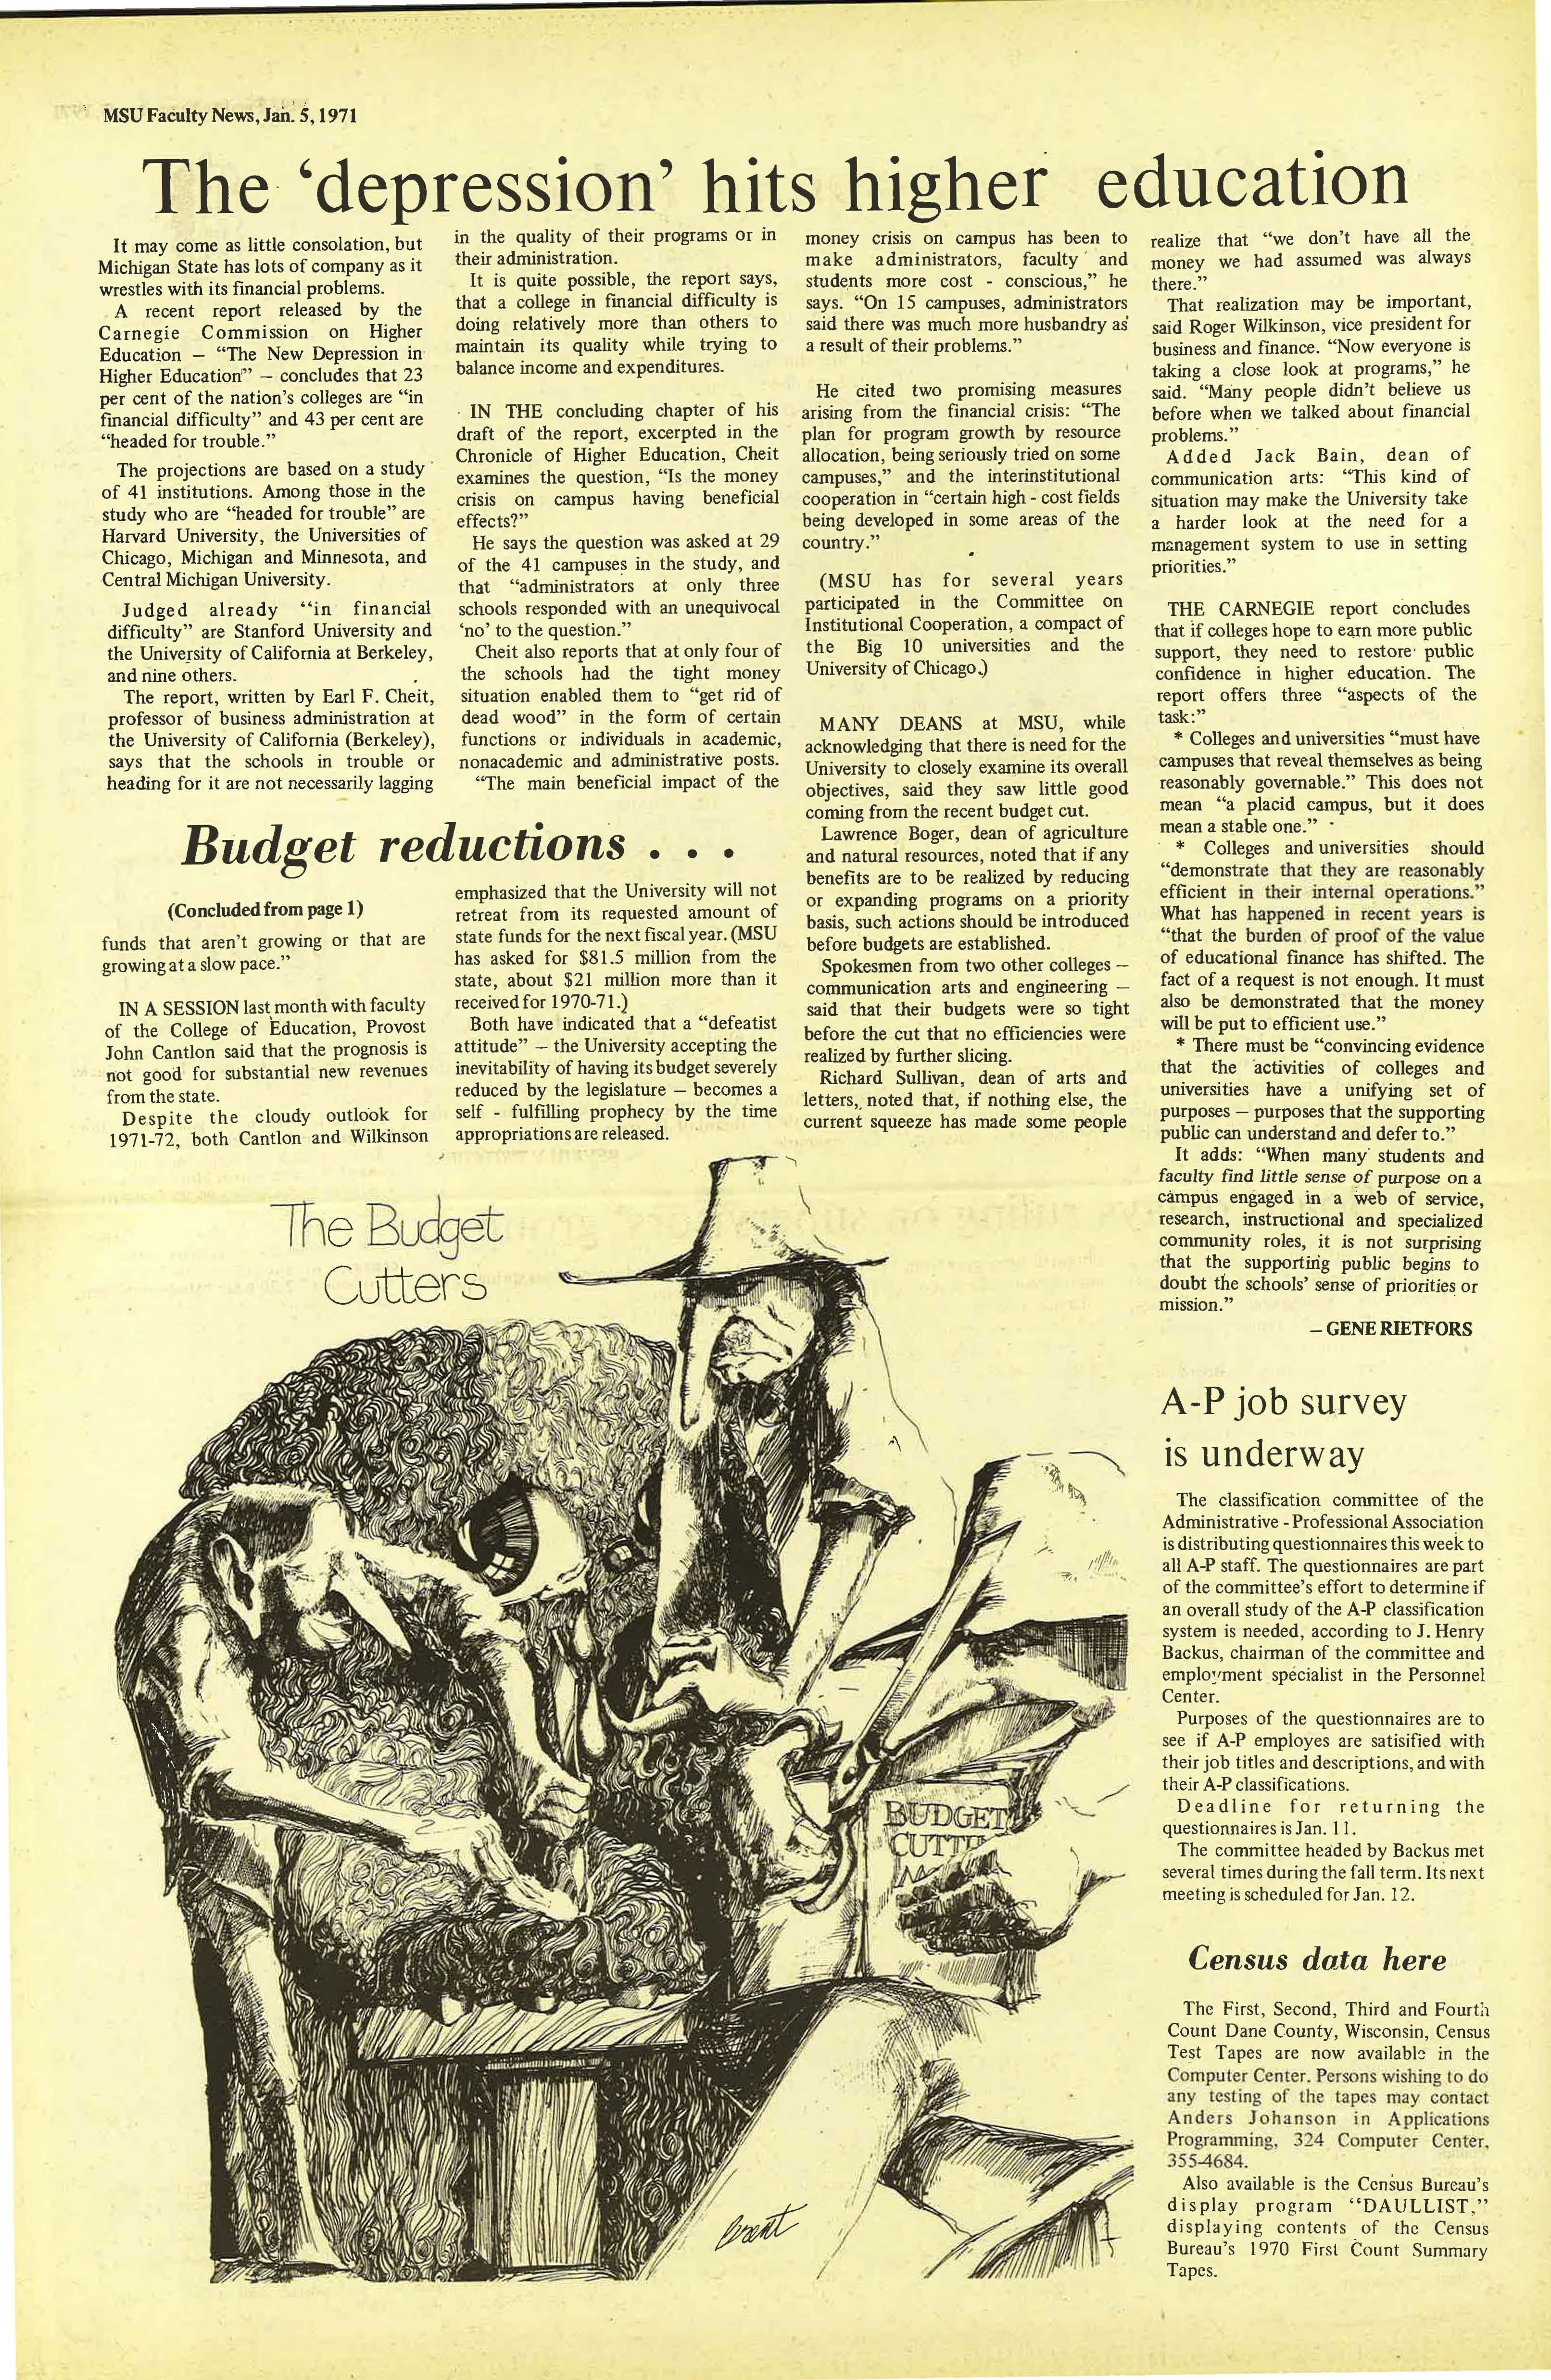 MSU News Bulletin, vol. 2, No. 27, May 13, 1971